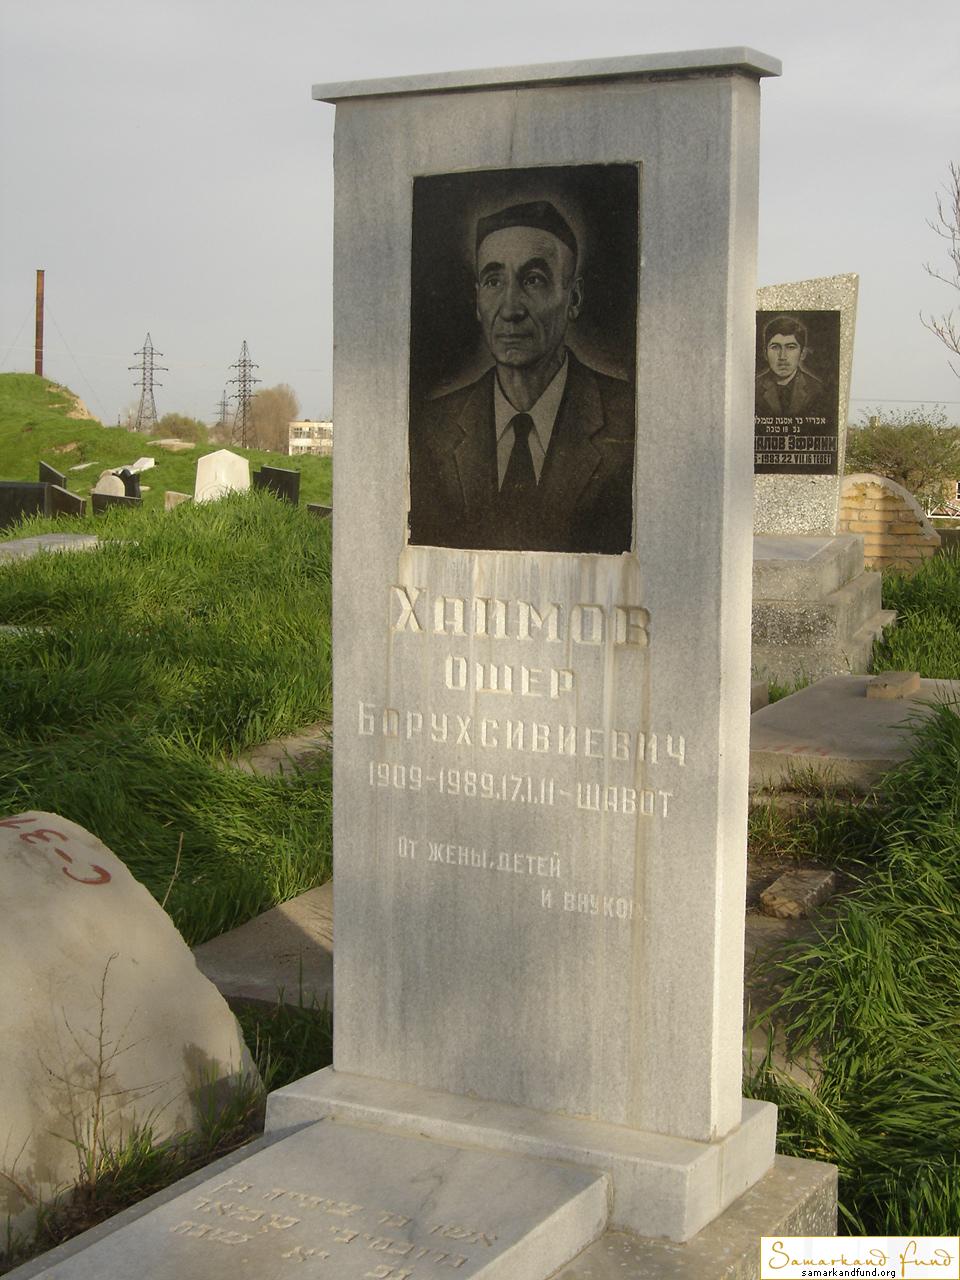 Хаимов Ошер Борухсивиевич  1909 - 1989 зах. 101.51  № 11.JPG